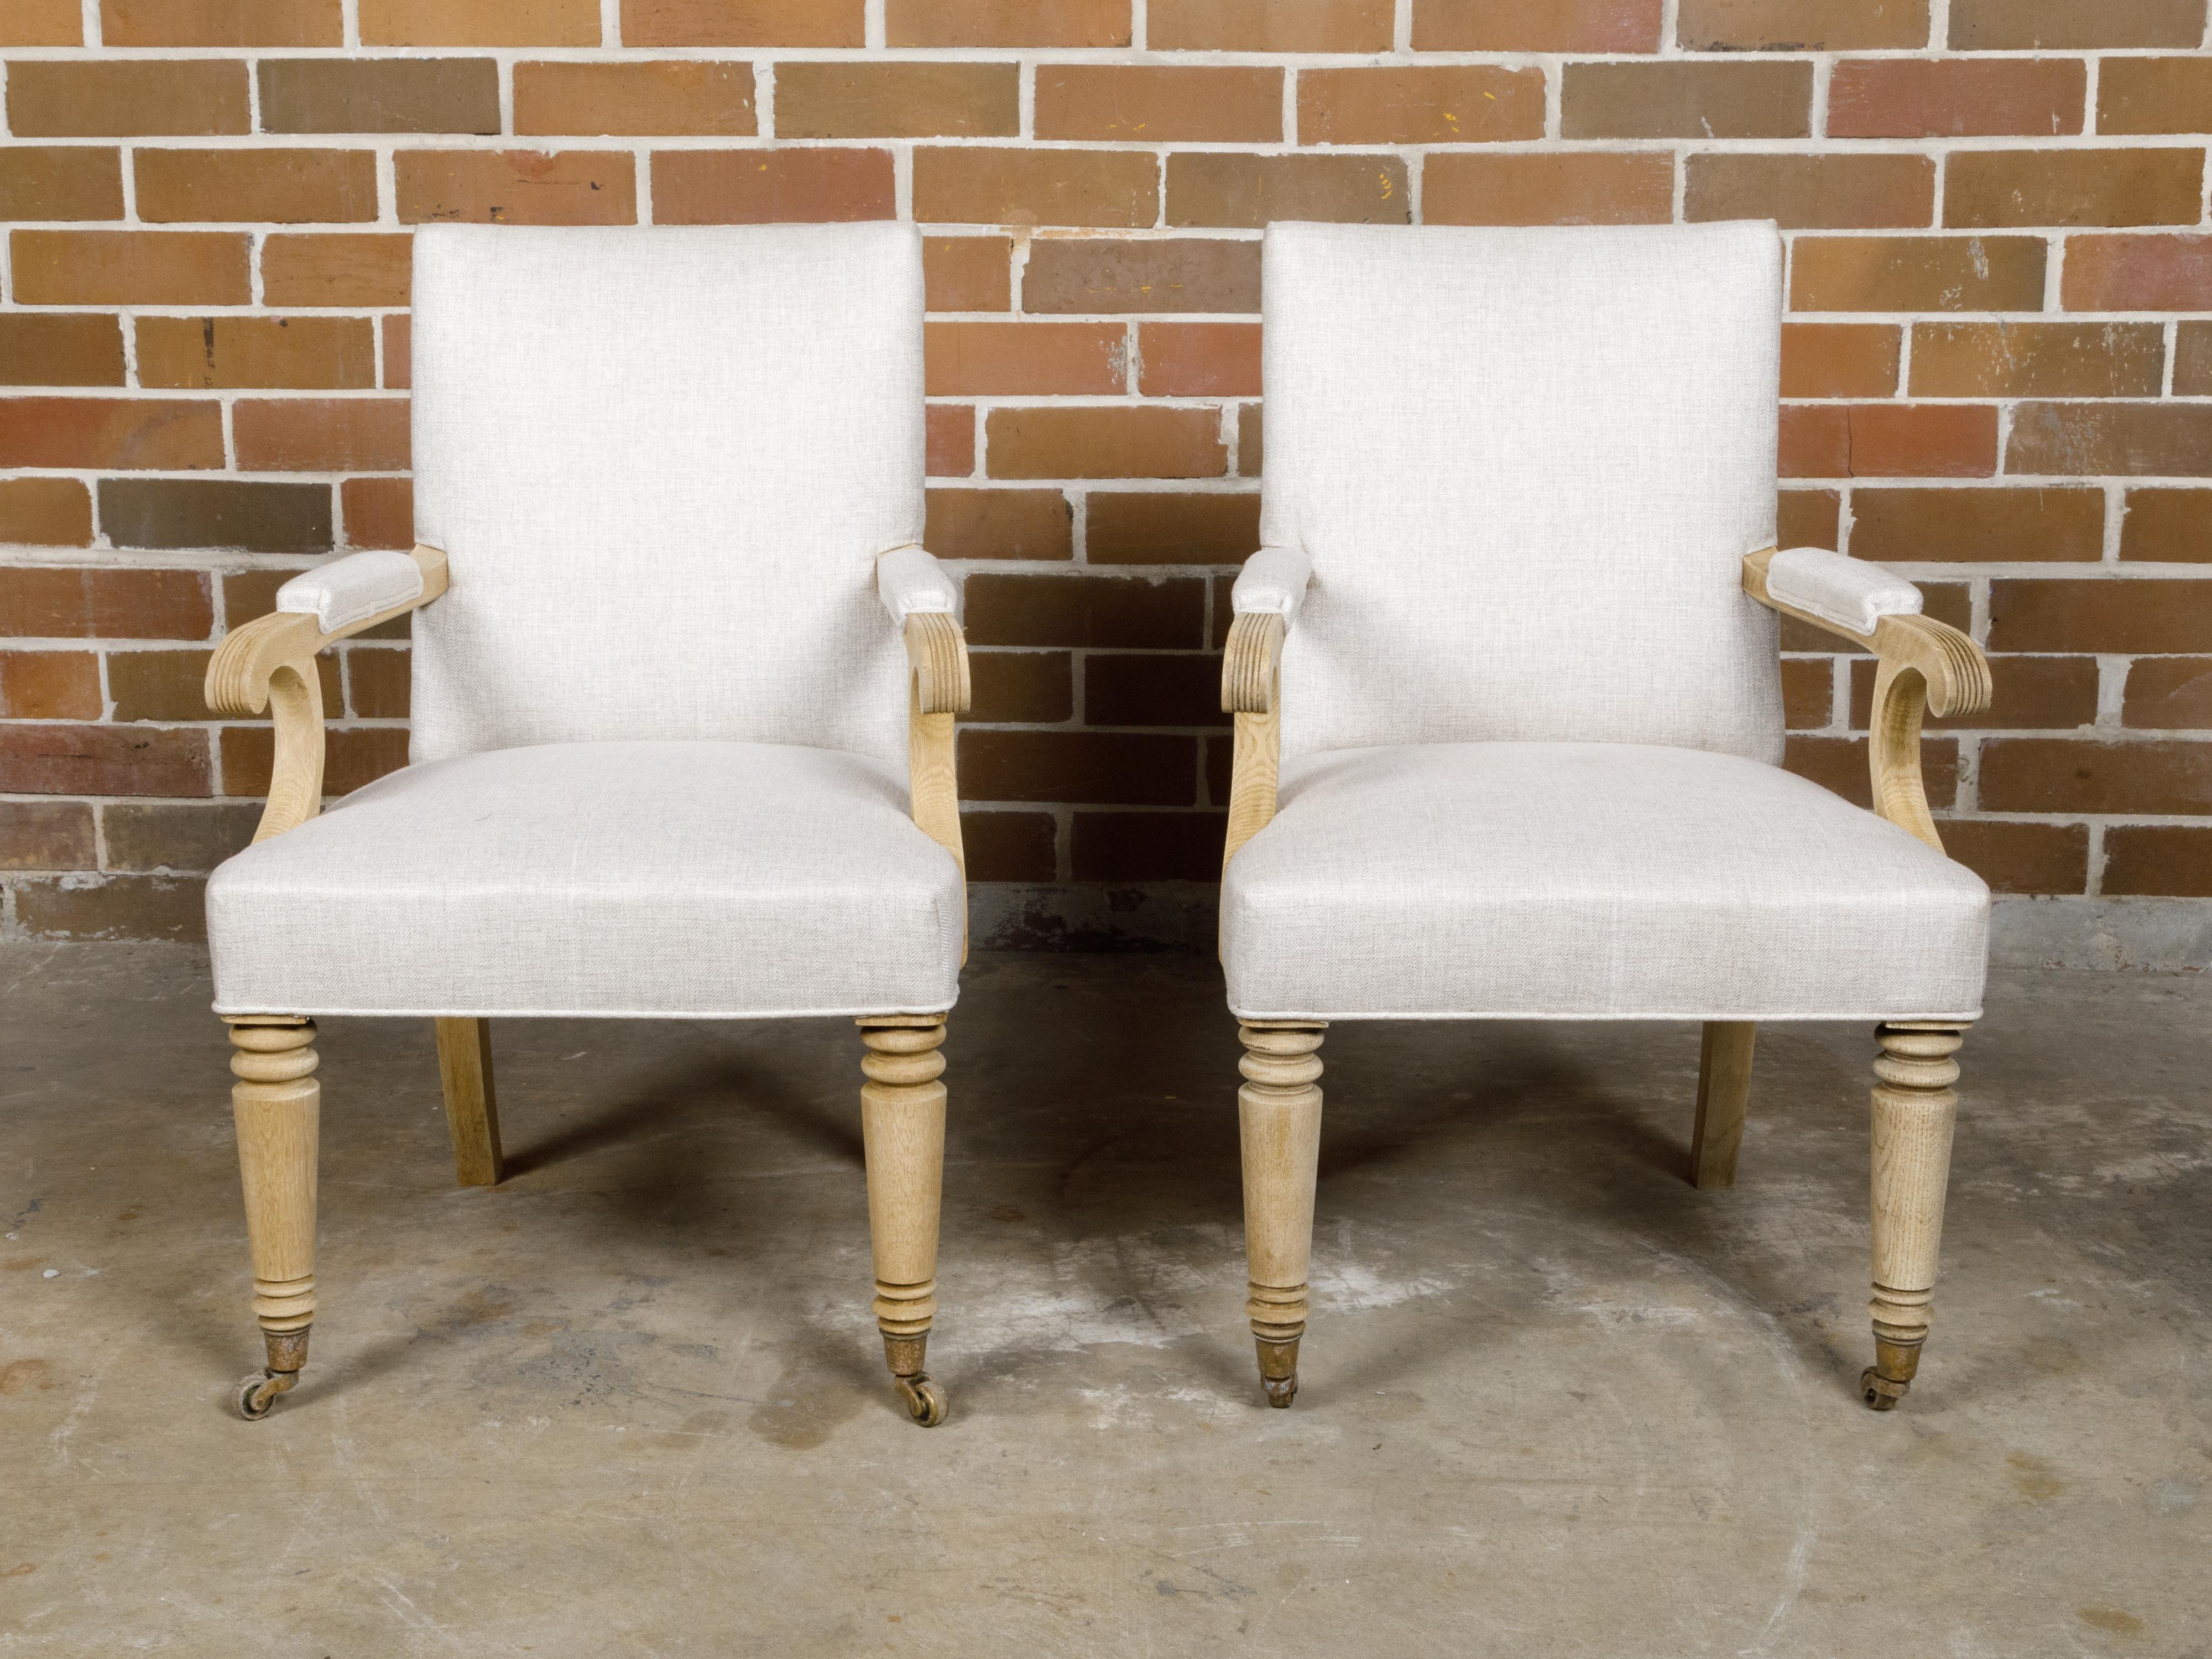 Paire de fauteuils anglais en bois blanchi du début du siècle, datant d'environ 1900, avec des accoudoirs élégants, des articulations à volutes, des pieds tournés à l'avant et des pieds en sabre à l'arrière. Découvrez l'élégance discrète de ces